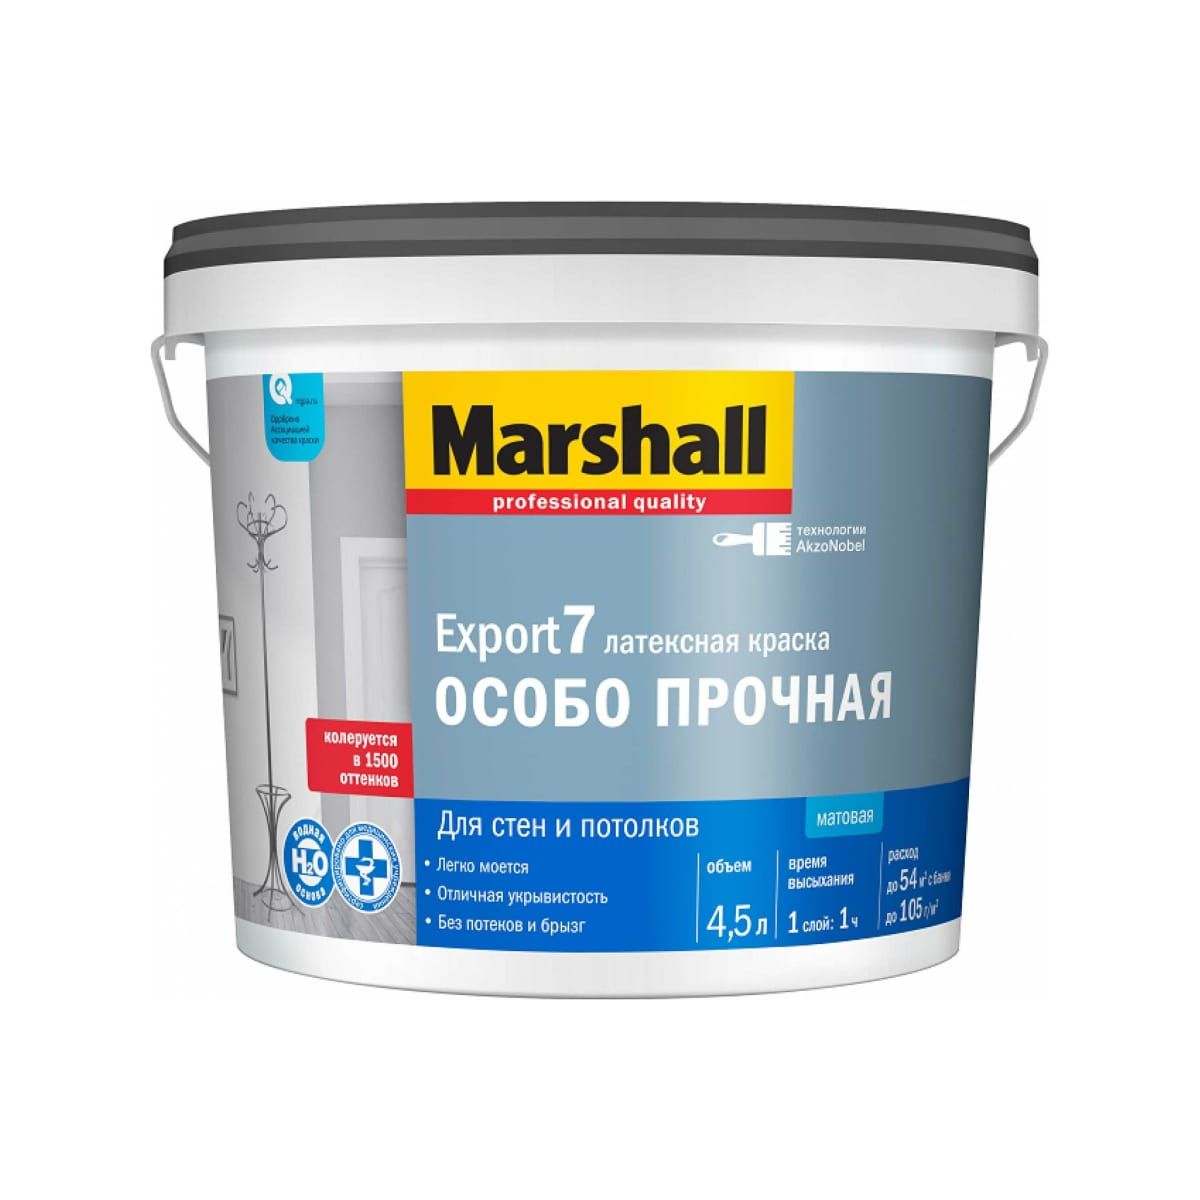 Краска Marshall Export 7 латексная, матовая, BC, 4,5 л краска marshall export 2 латексная глубокоматовая база bw 900 мл